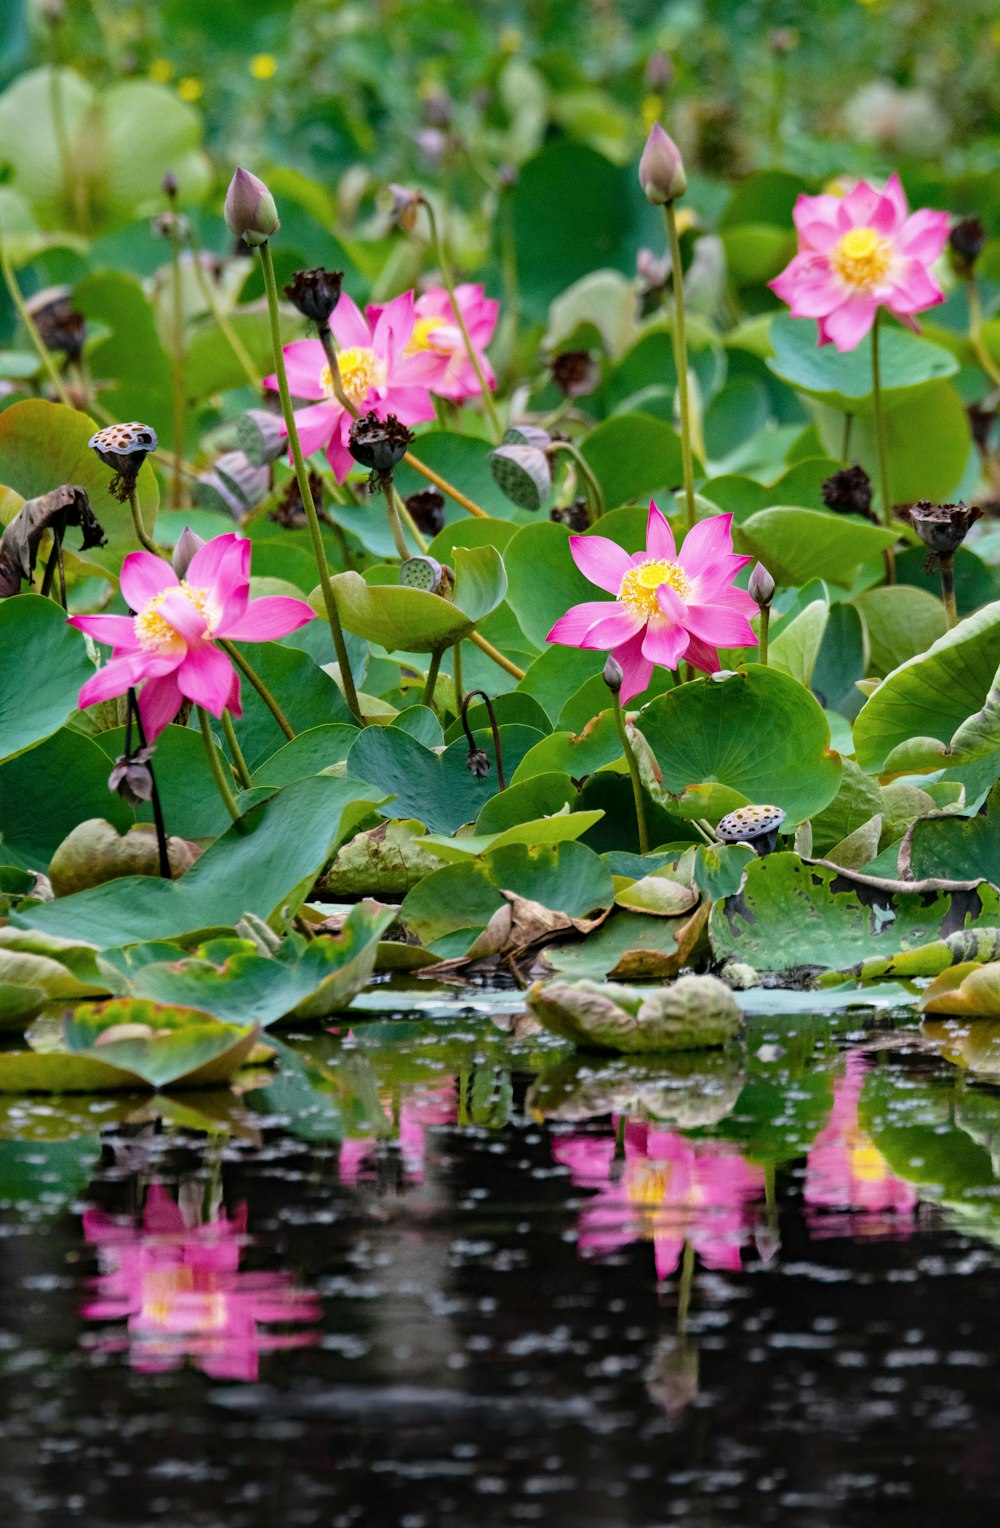 Flachfokusfotografie einer grünblättrigen Pflanze mit rosa Blüten